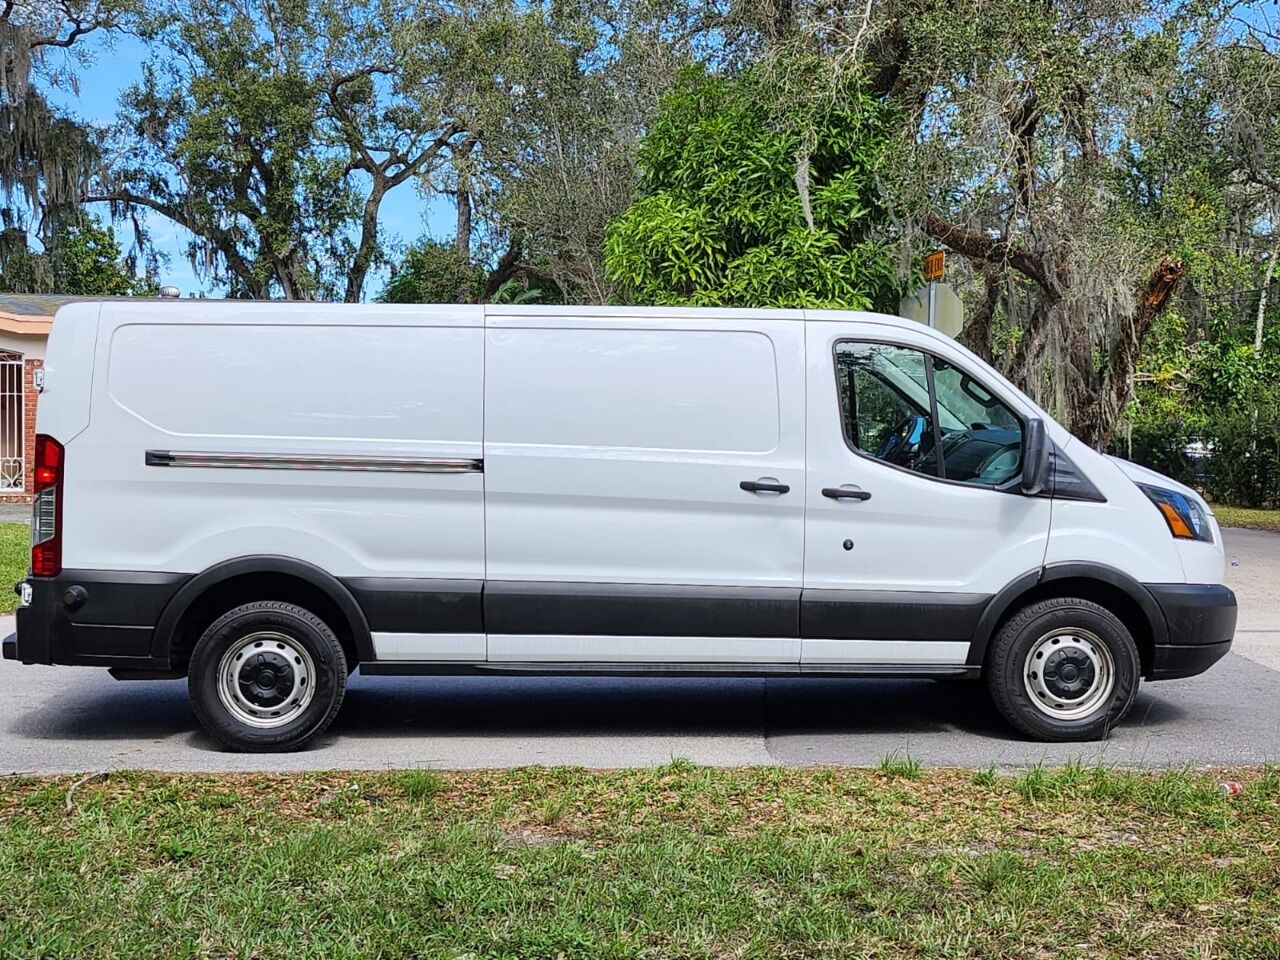 2019 FORD Transit Van - $22,995